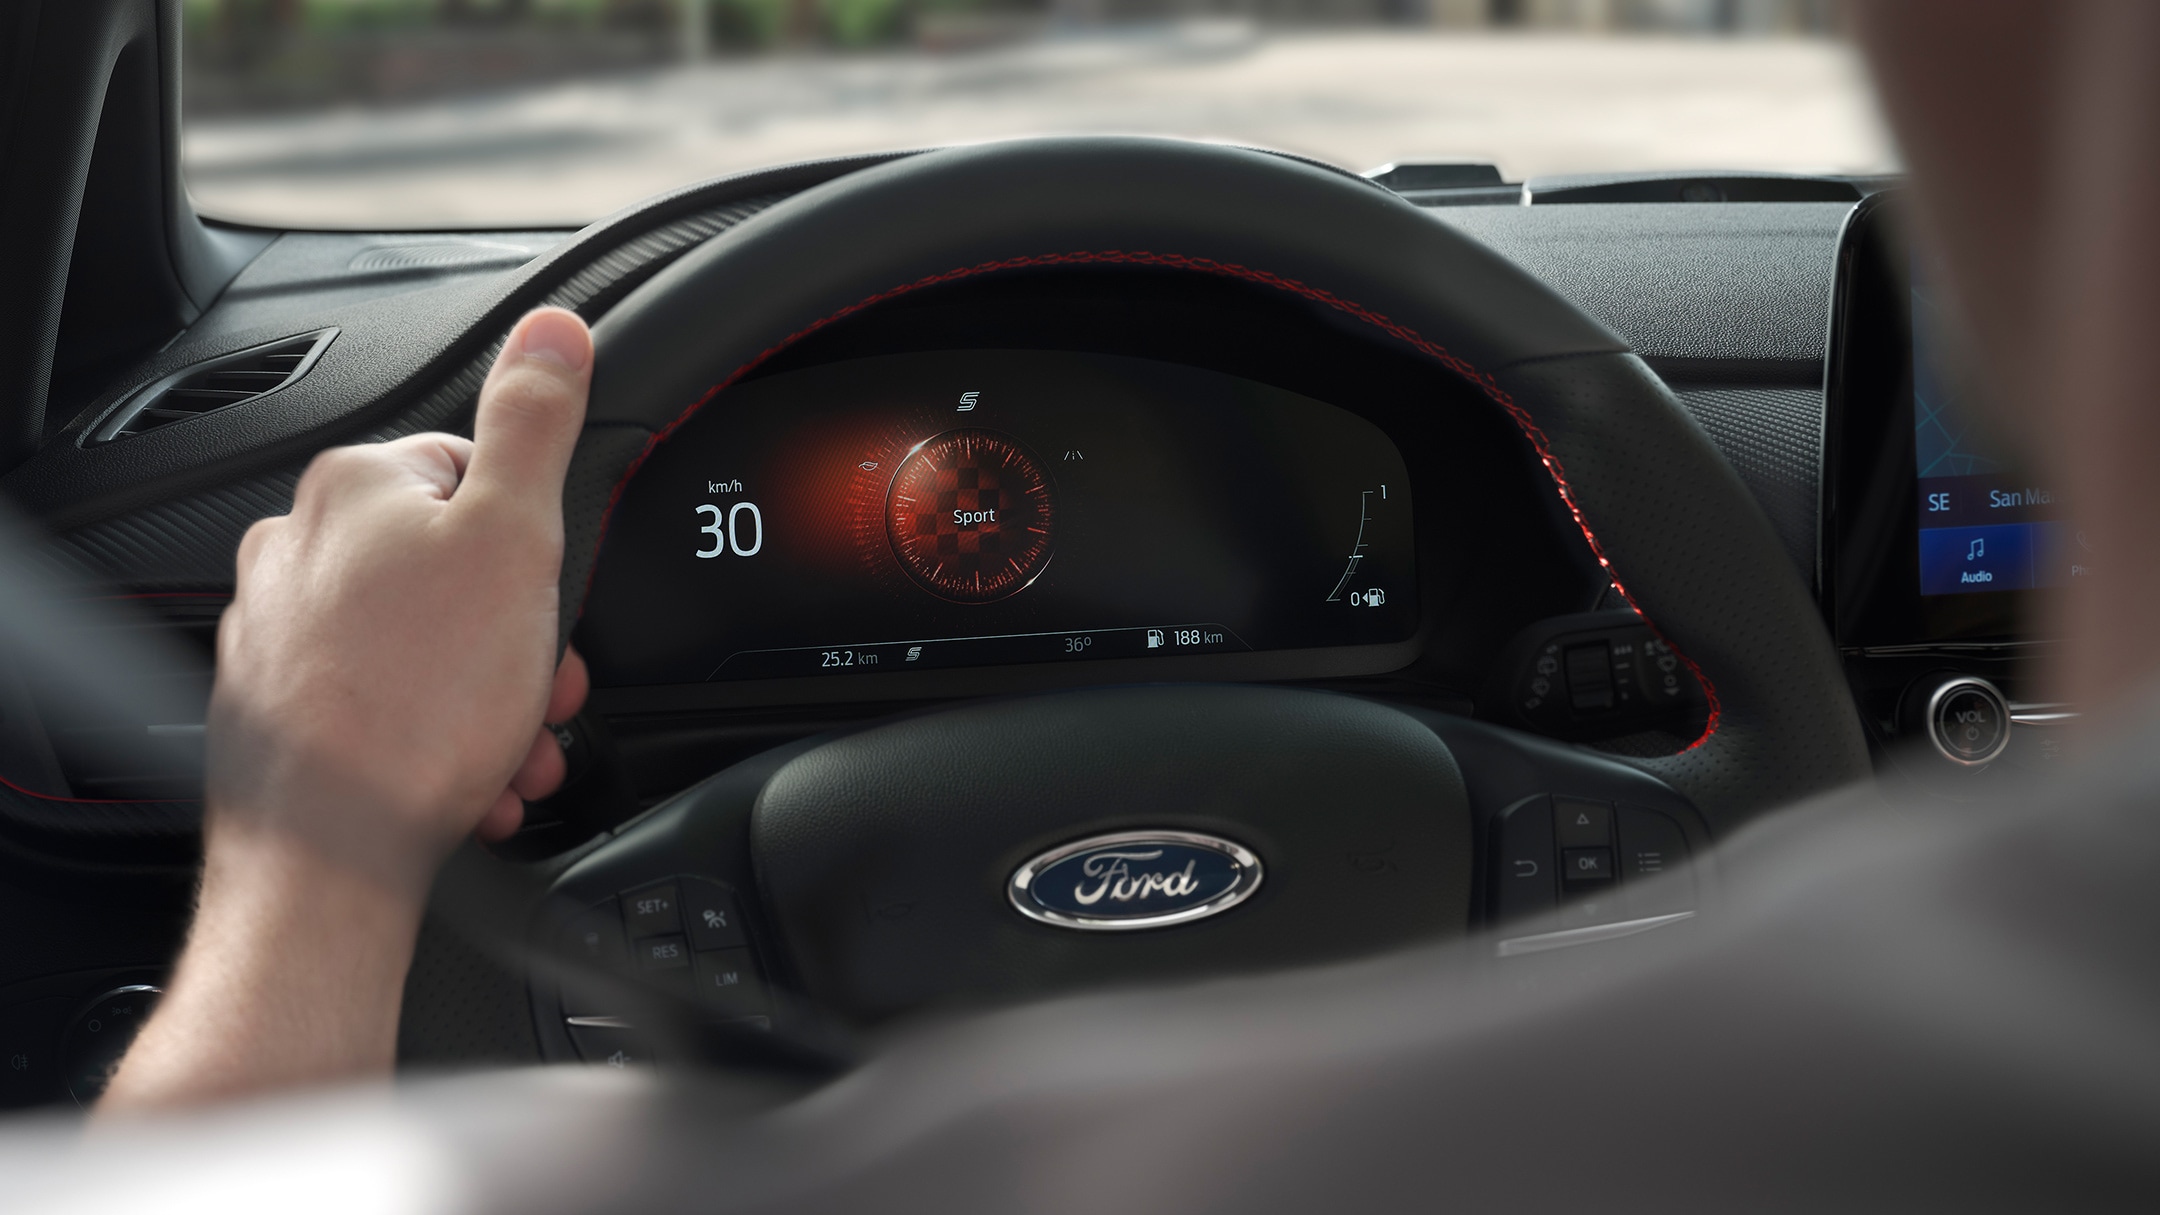 Ford Fiesta Innenraum. Detailansicht des Lenkrads mit digitaler Instrumententafel im Hintergrund.